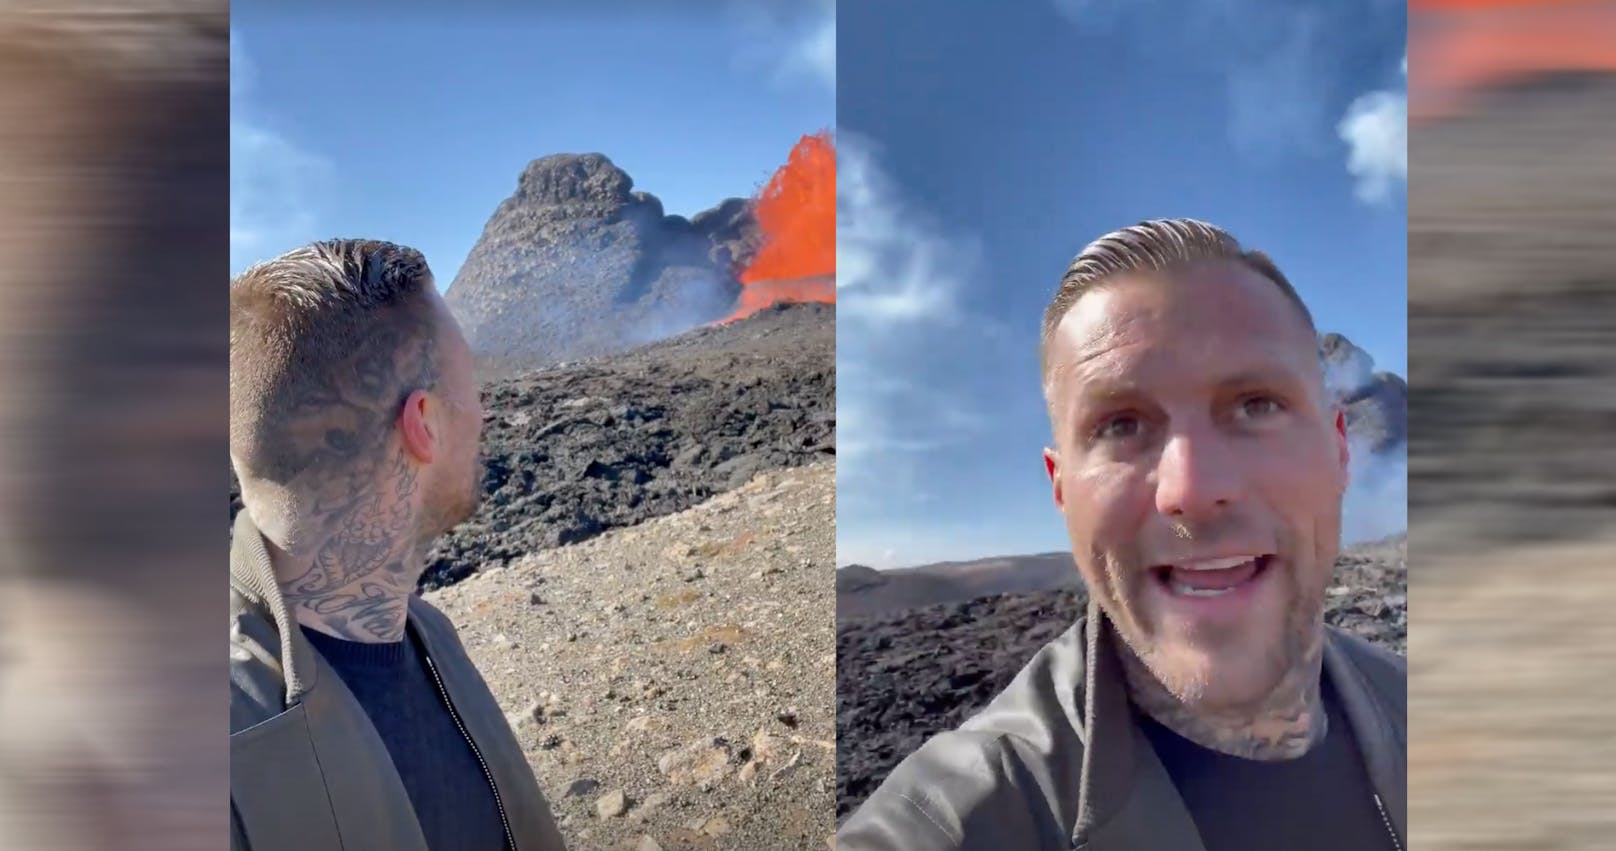 "Oh Scheiße": Vulkanausbruch bei Videodreh von Rapper